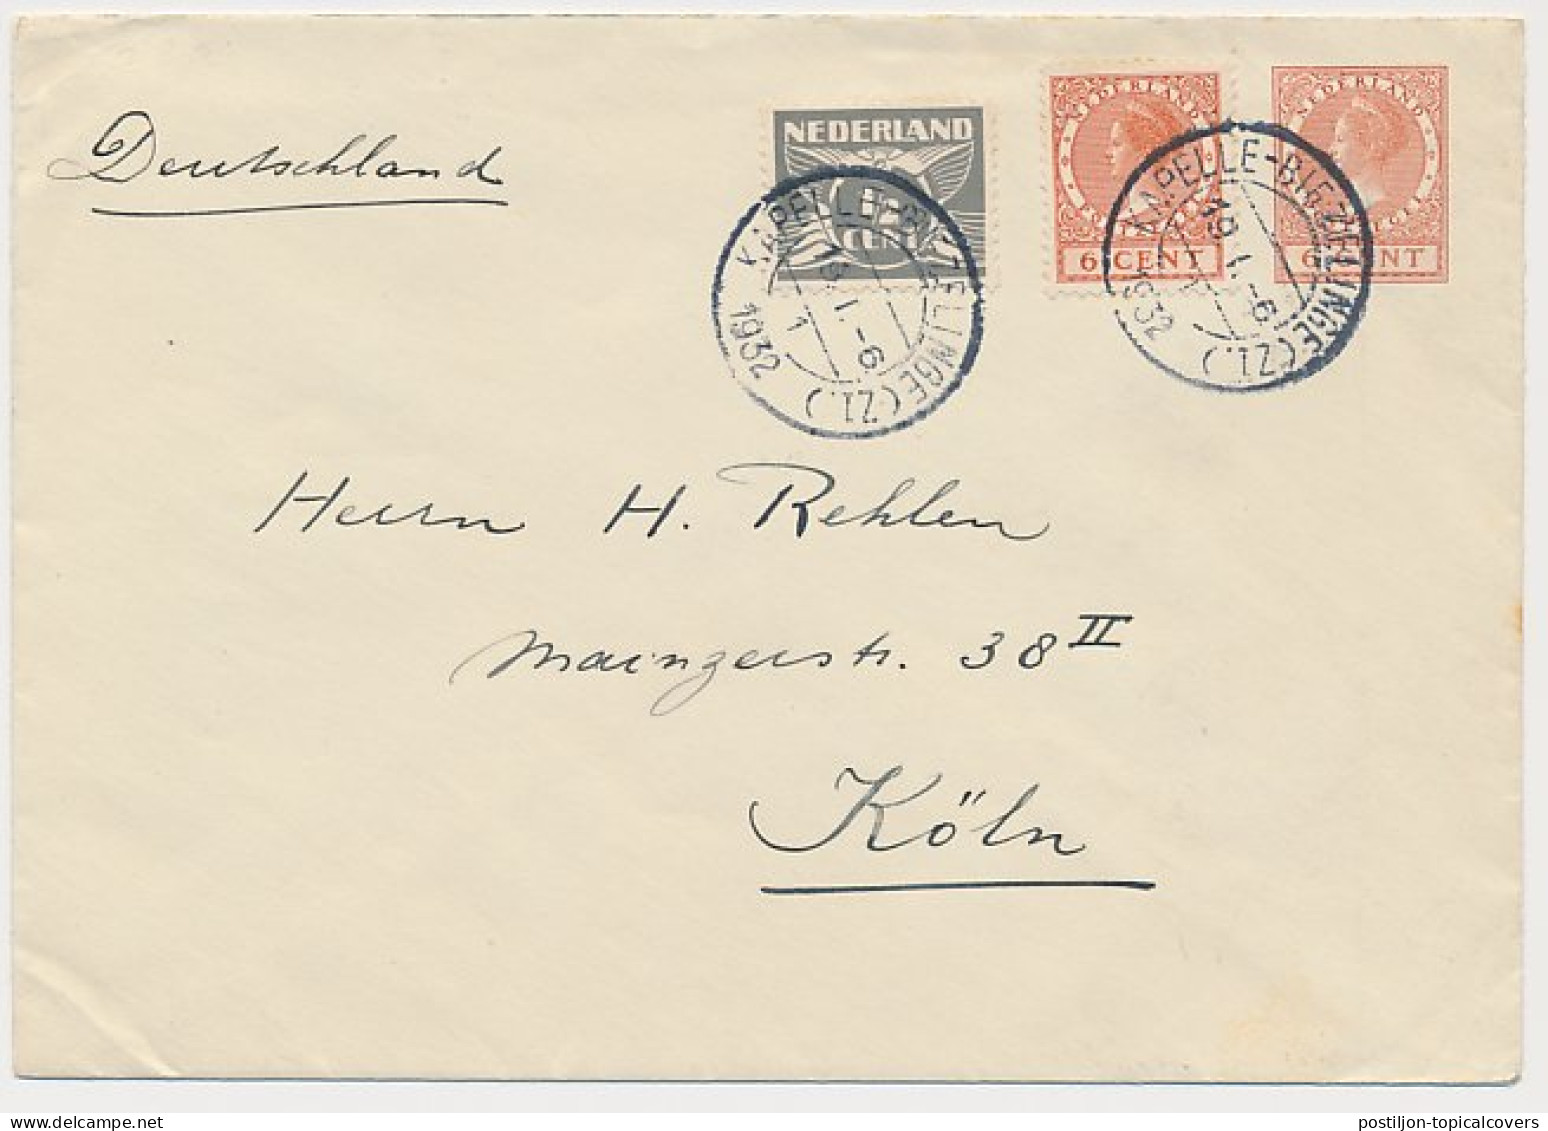 Envelop G. 23 A / Bijfr. Kapelle Biezelinge - Duitsland 1932 - Material Postal